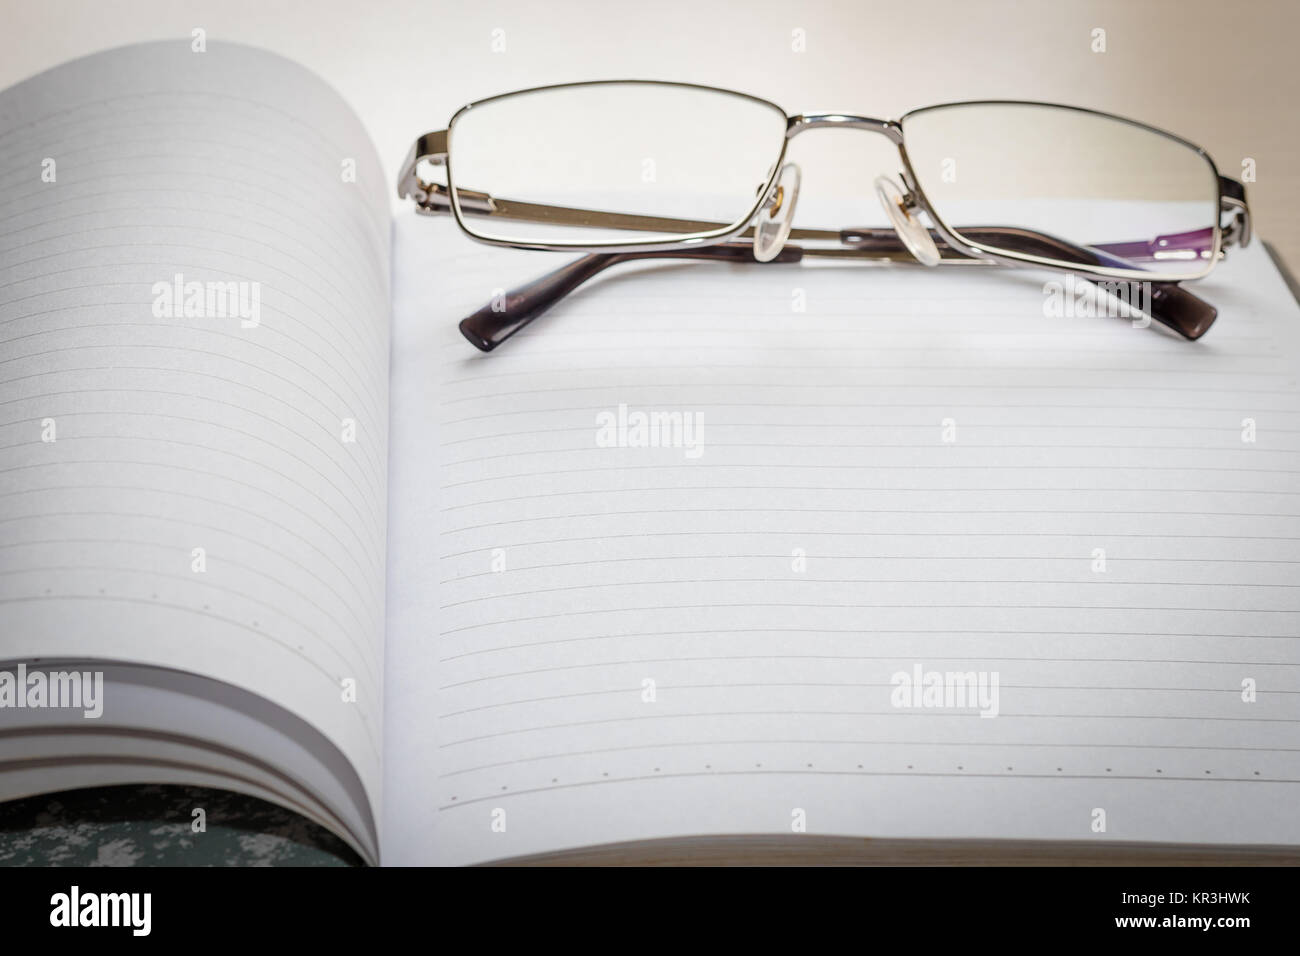 Les lunettes et le bloc-notes avec page blanche Banque D'Images